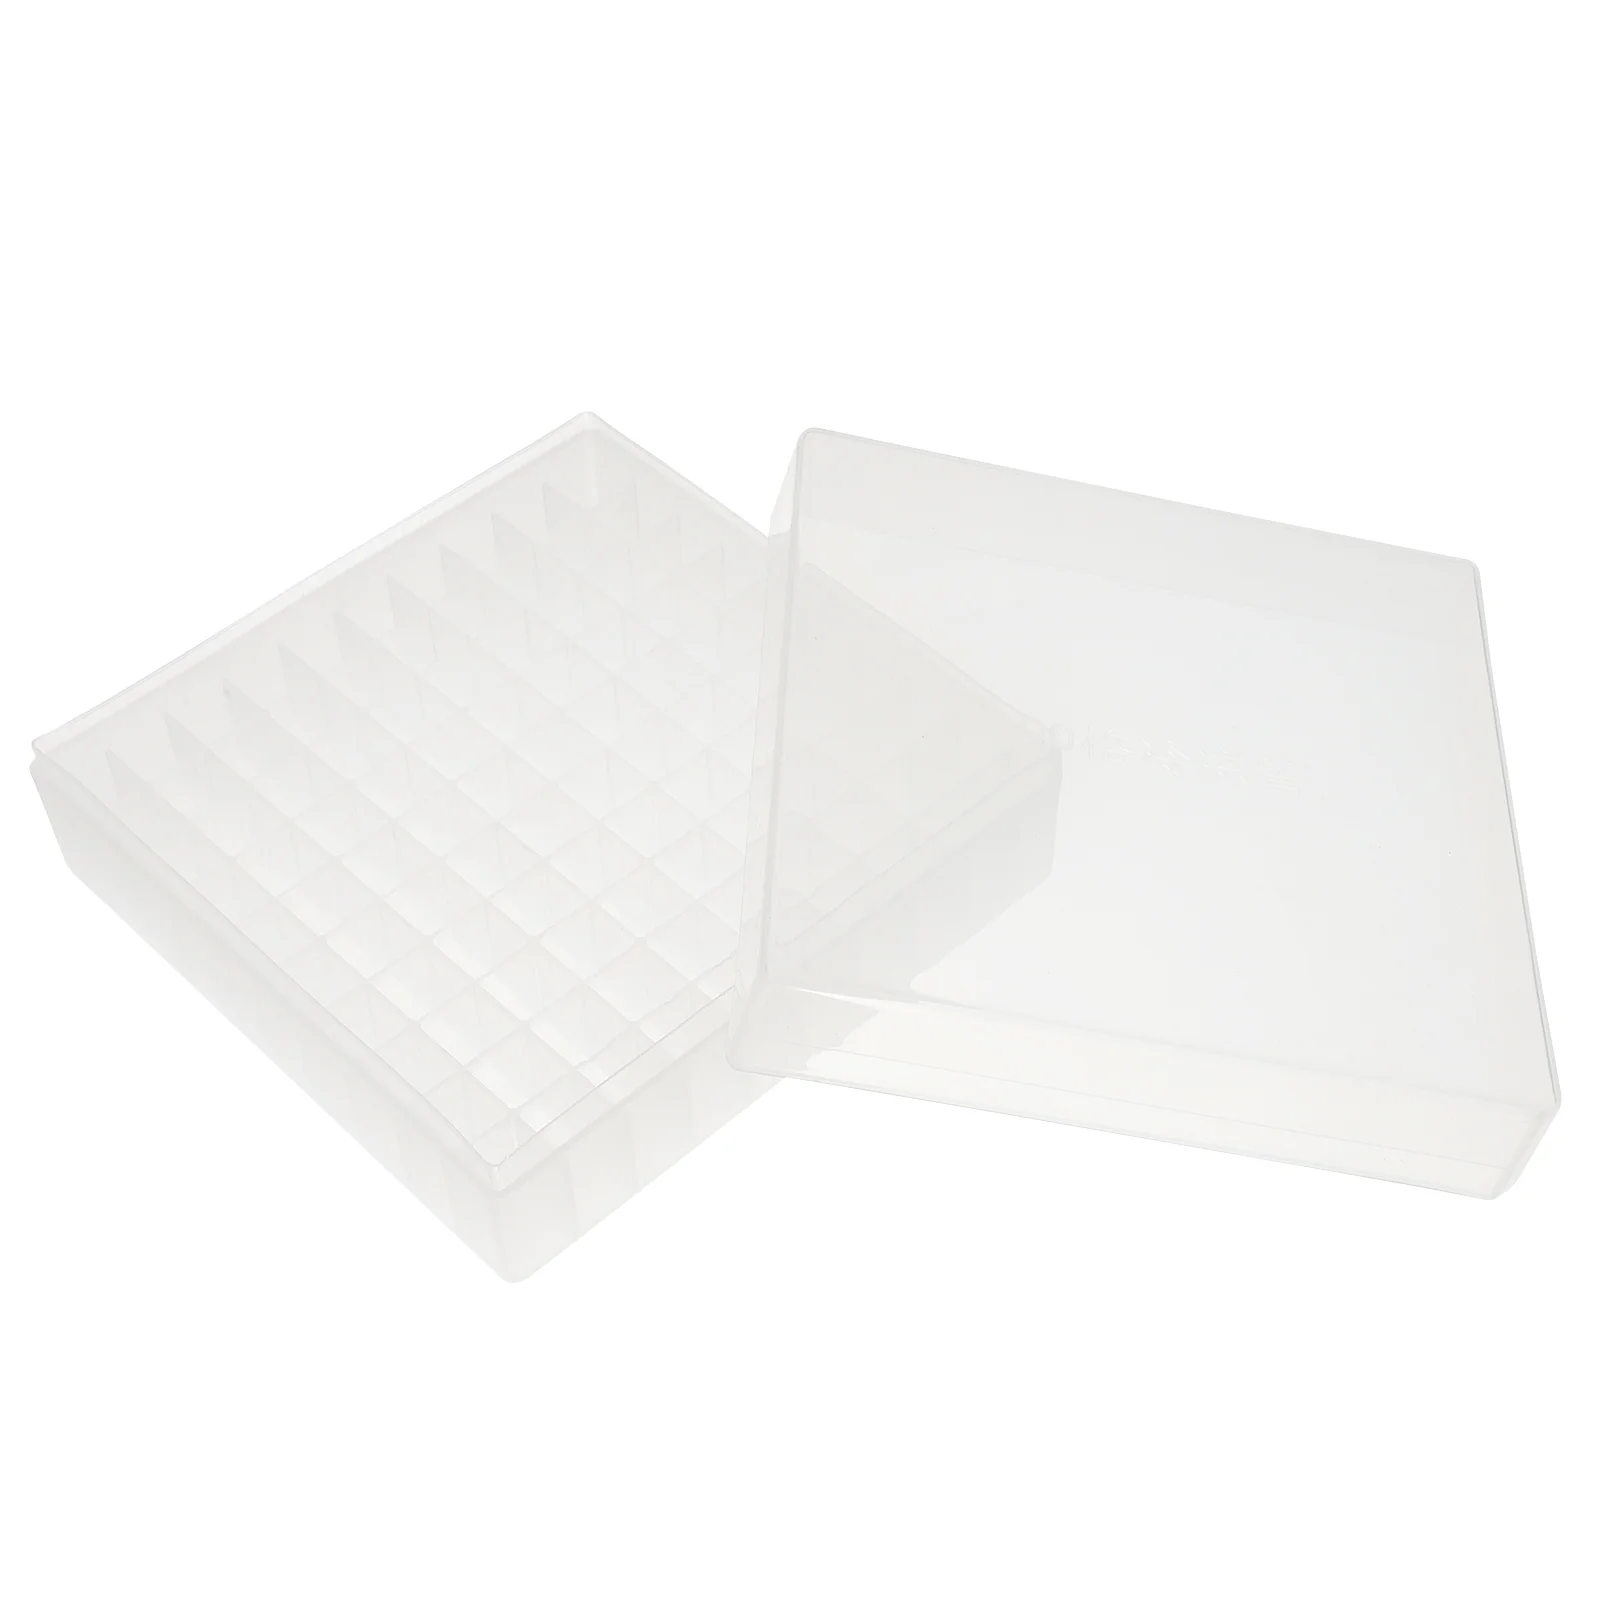 Криогенная коробка Стойка для флаконов Пластиковая коробка для хранения Коробка для хранения микропробирок (100 лунок)